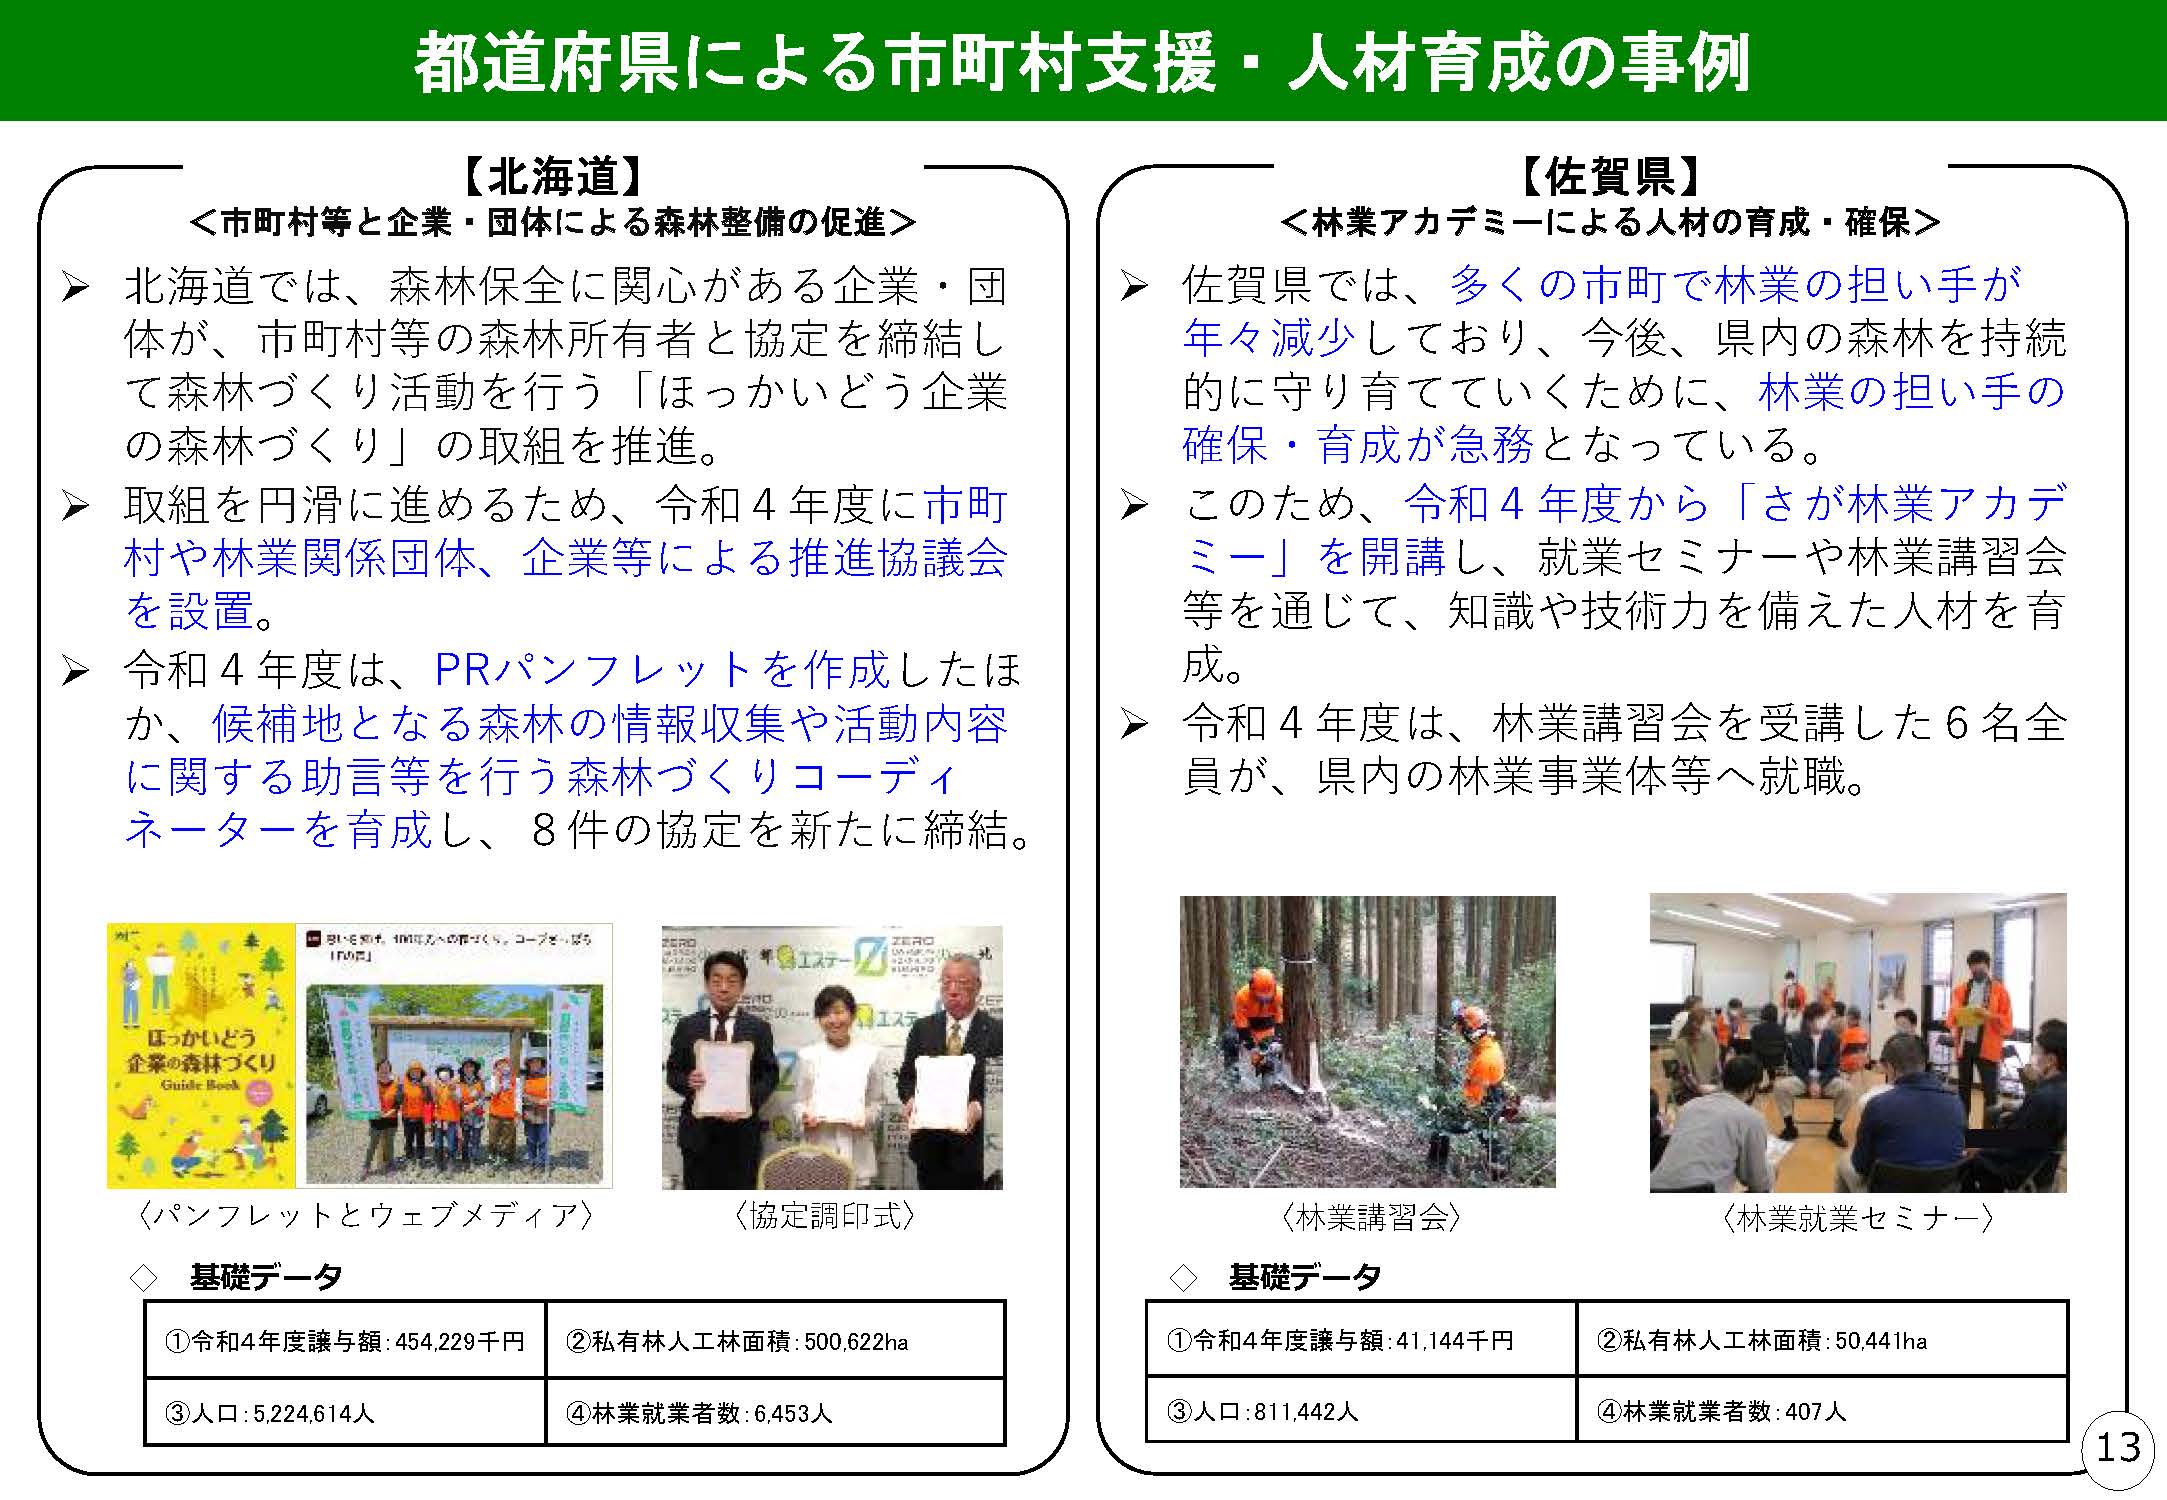 森林環境譲与税を活用した自治体の取組の紹介 Vol.11 北海道